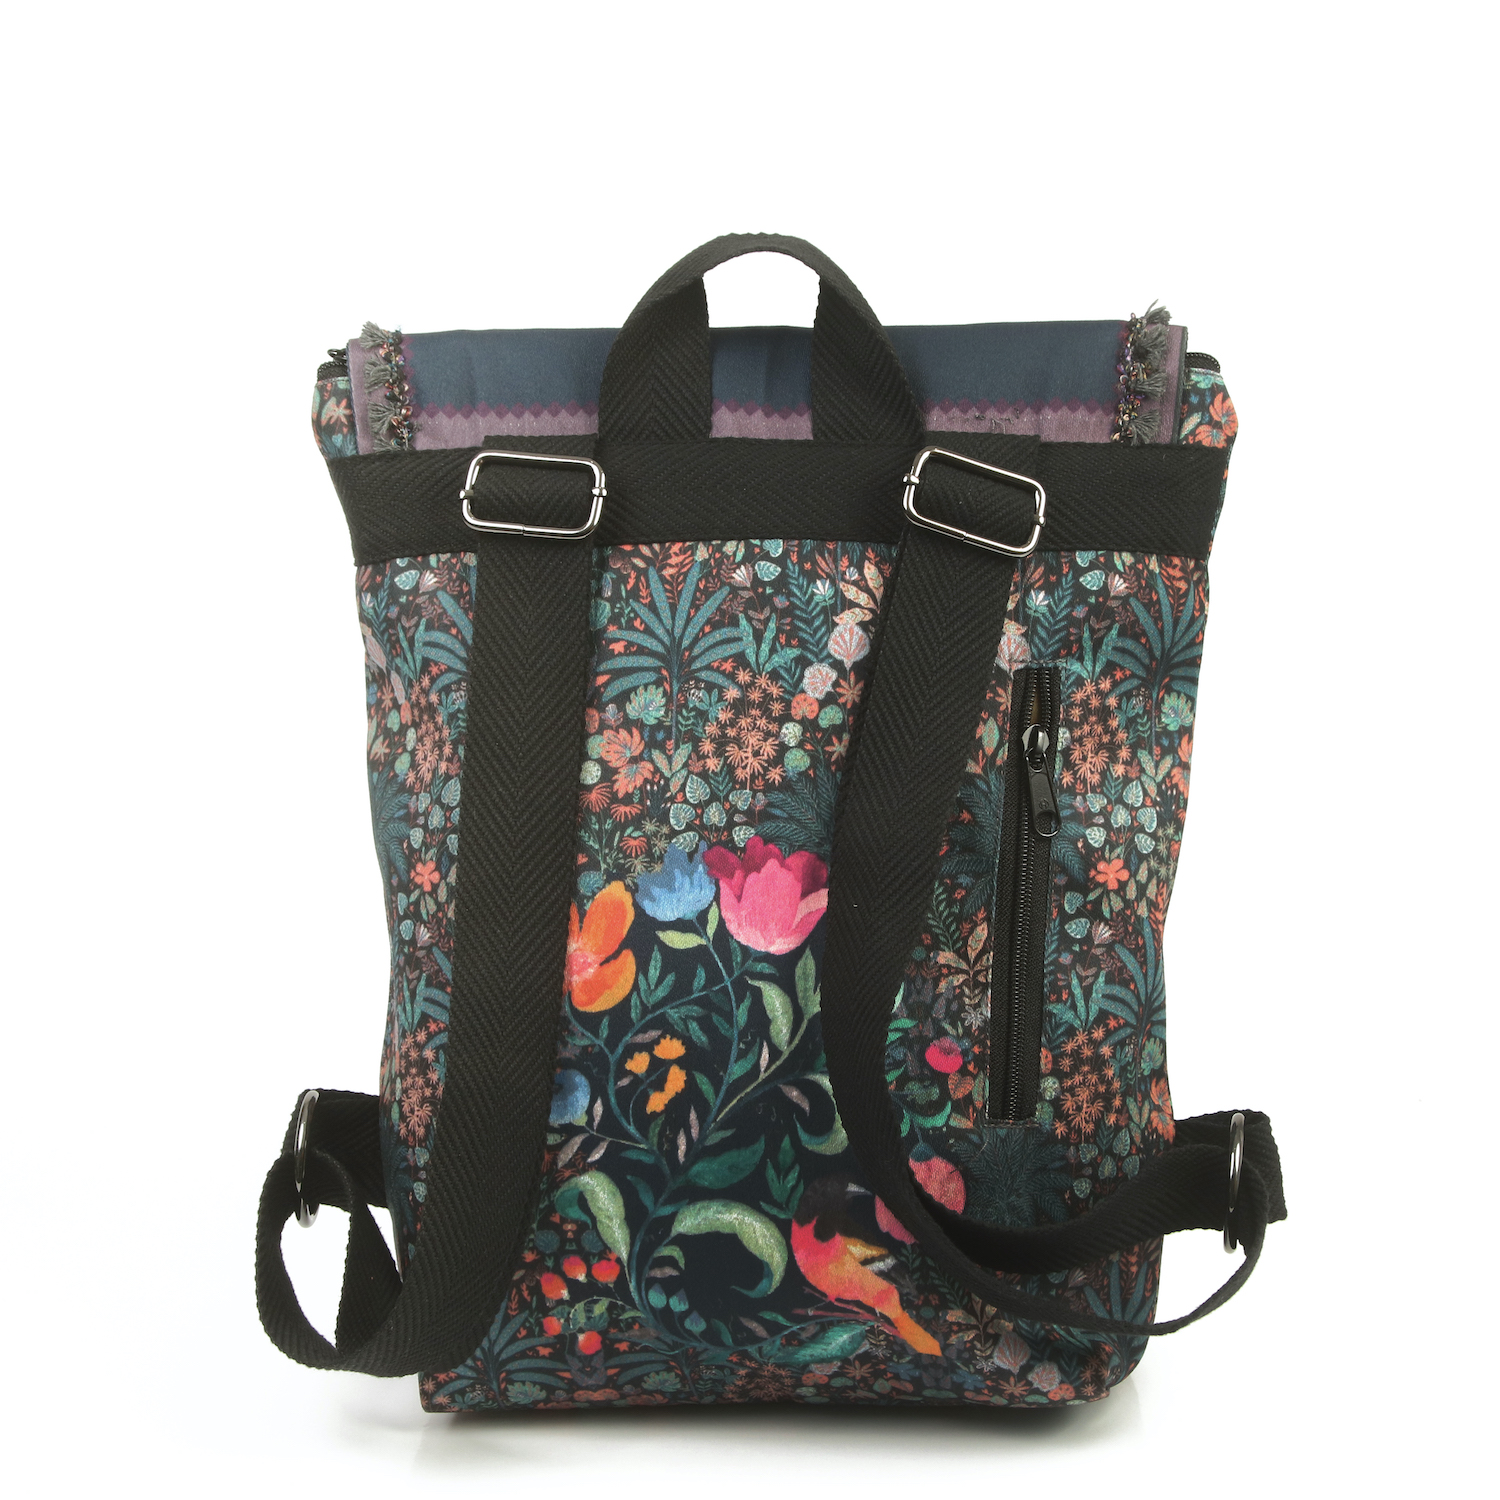 LazyDayz Designs Backpack γυναικείος σάκος πλάτης χειροποίητος bb0702c